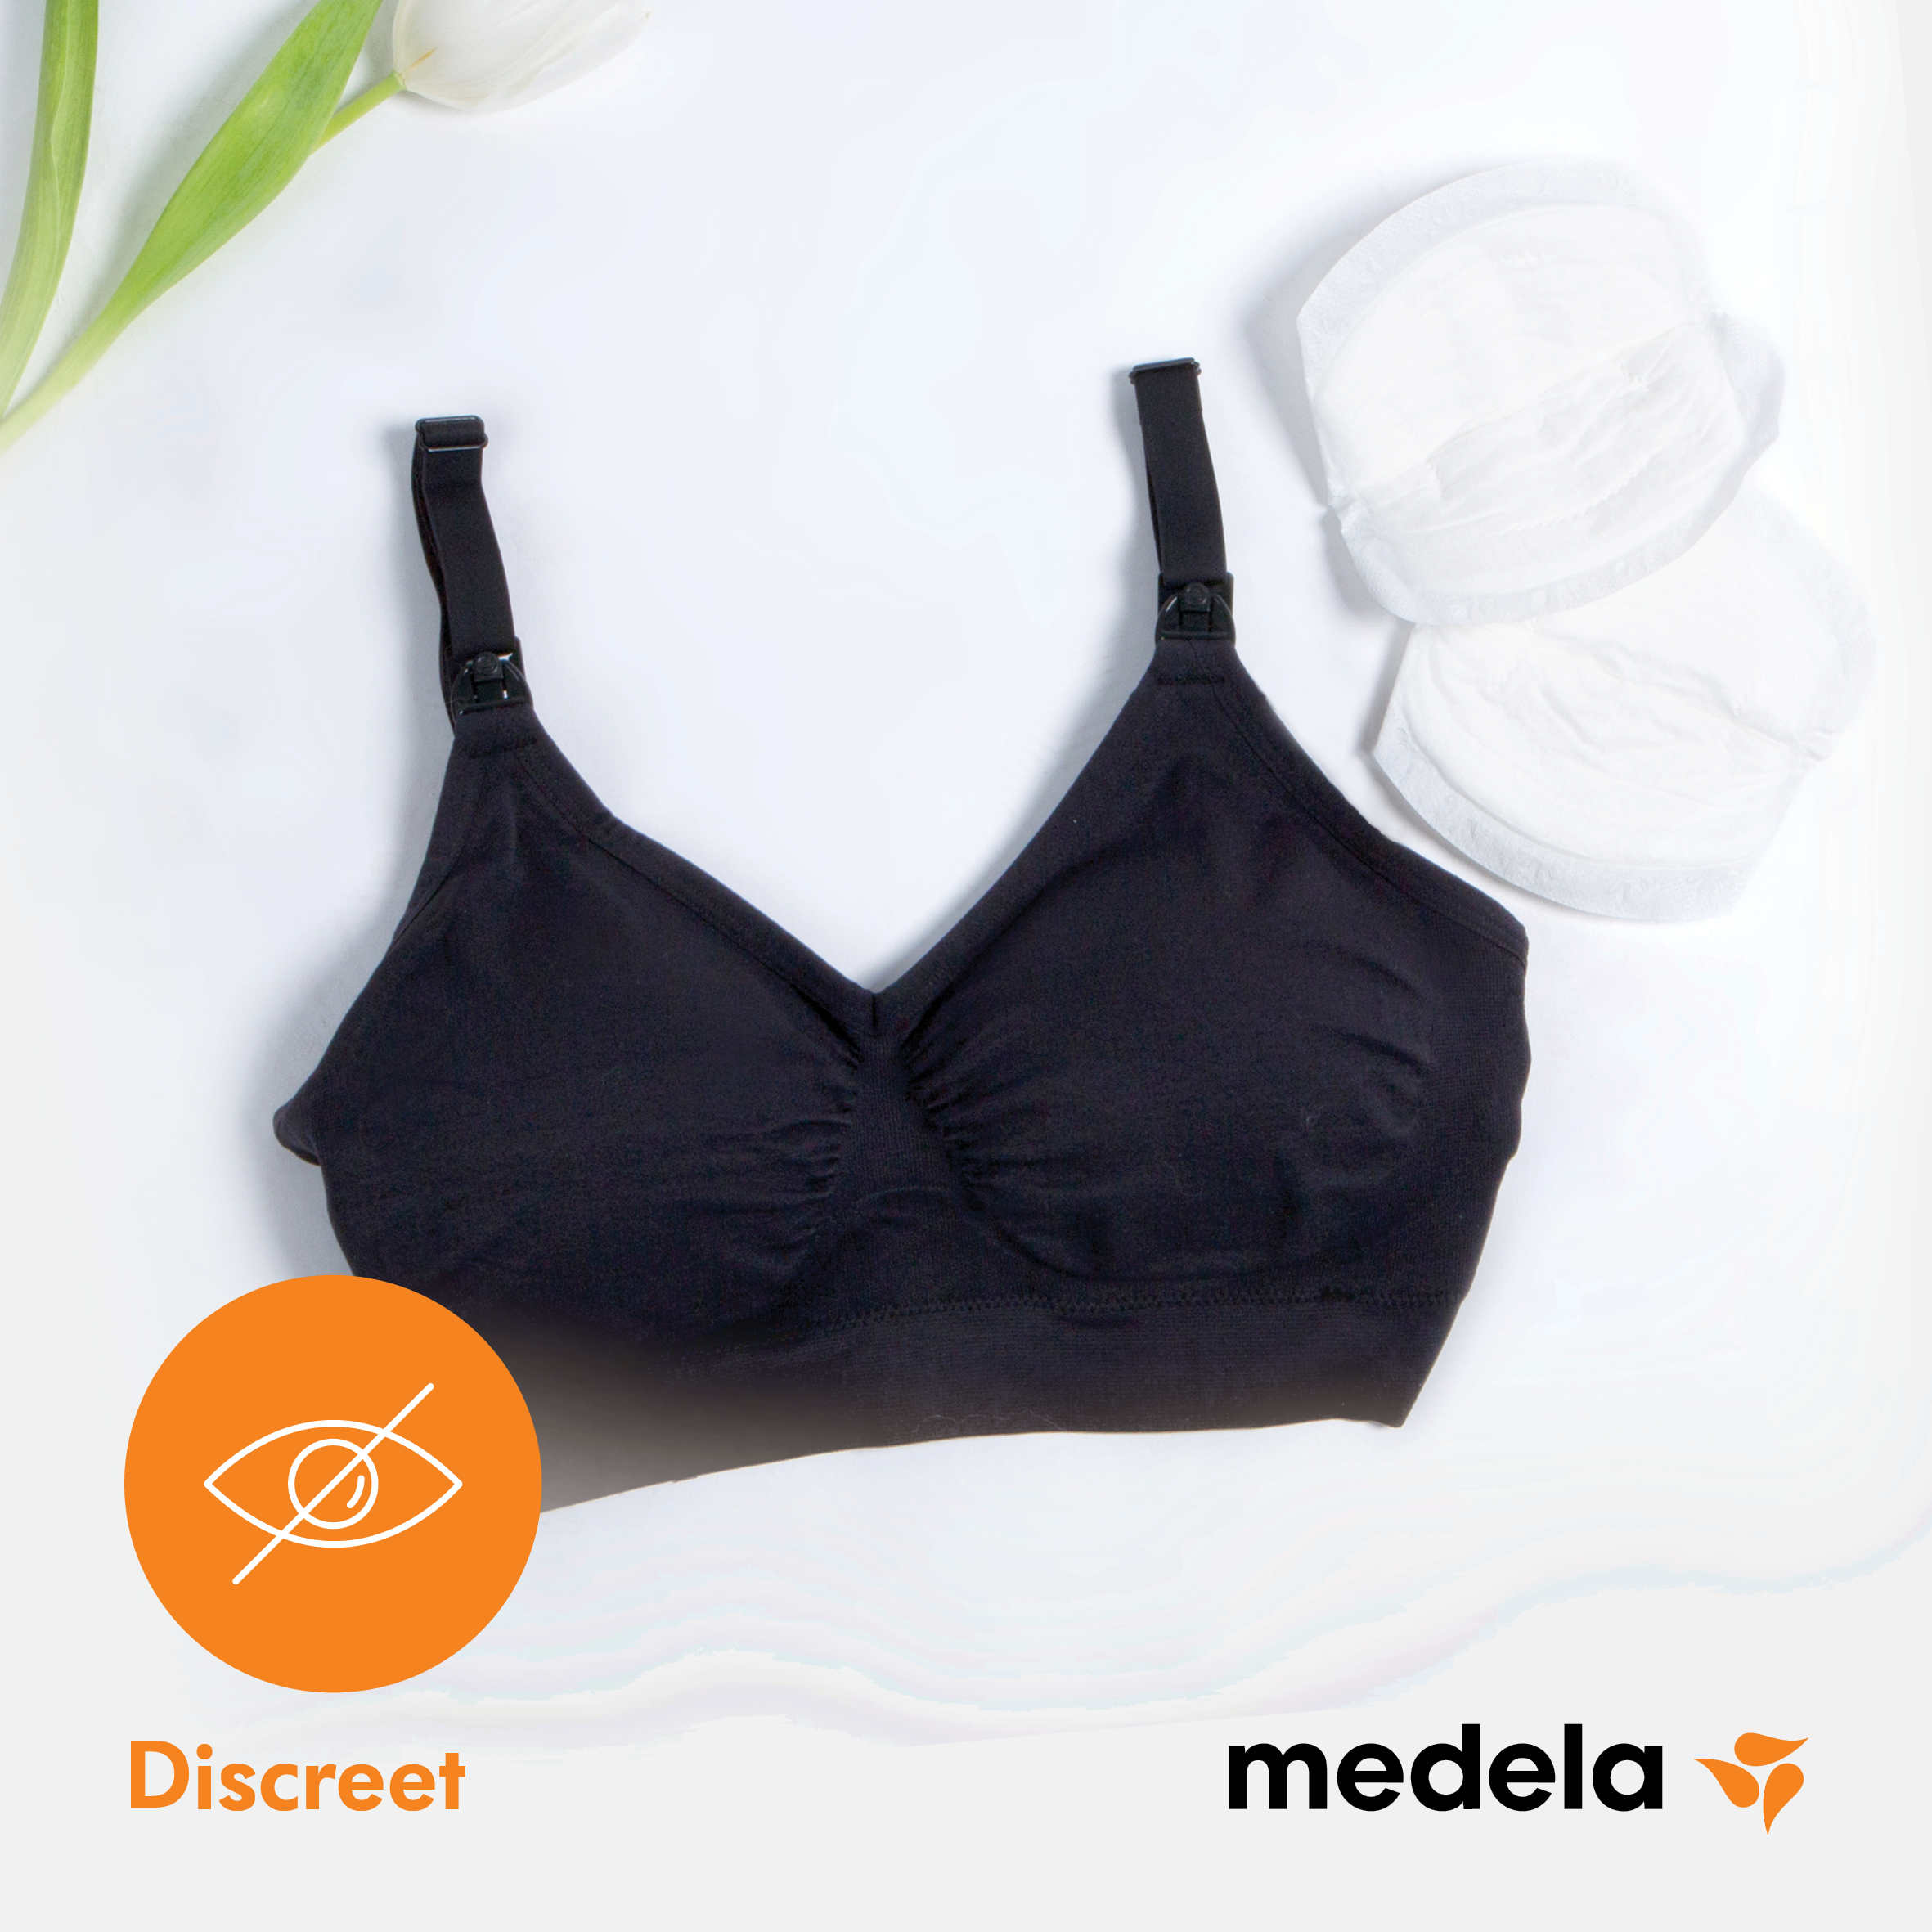 Medela Safe & Dry™ Disposable nursing pads